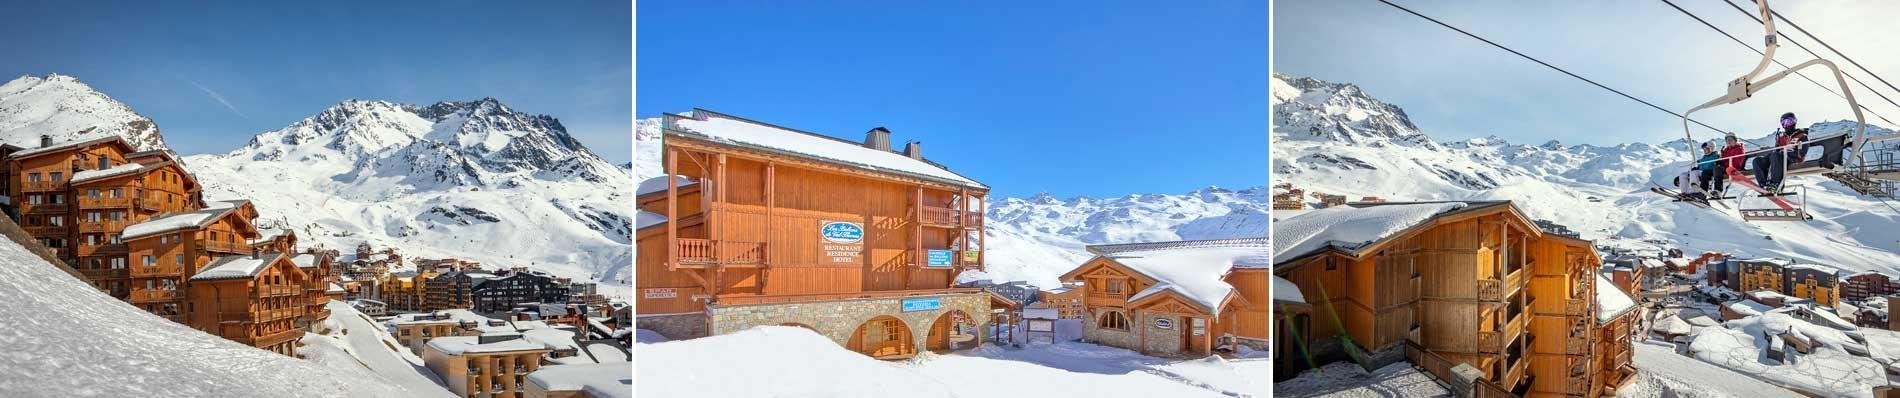 BALCONS Val Thorens skivakantie vroegboek voordeel aan de piste Les 3 Vallees wintersport